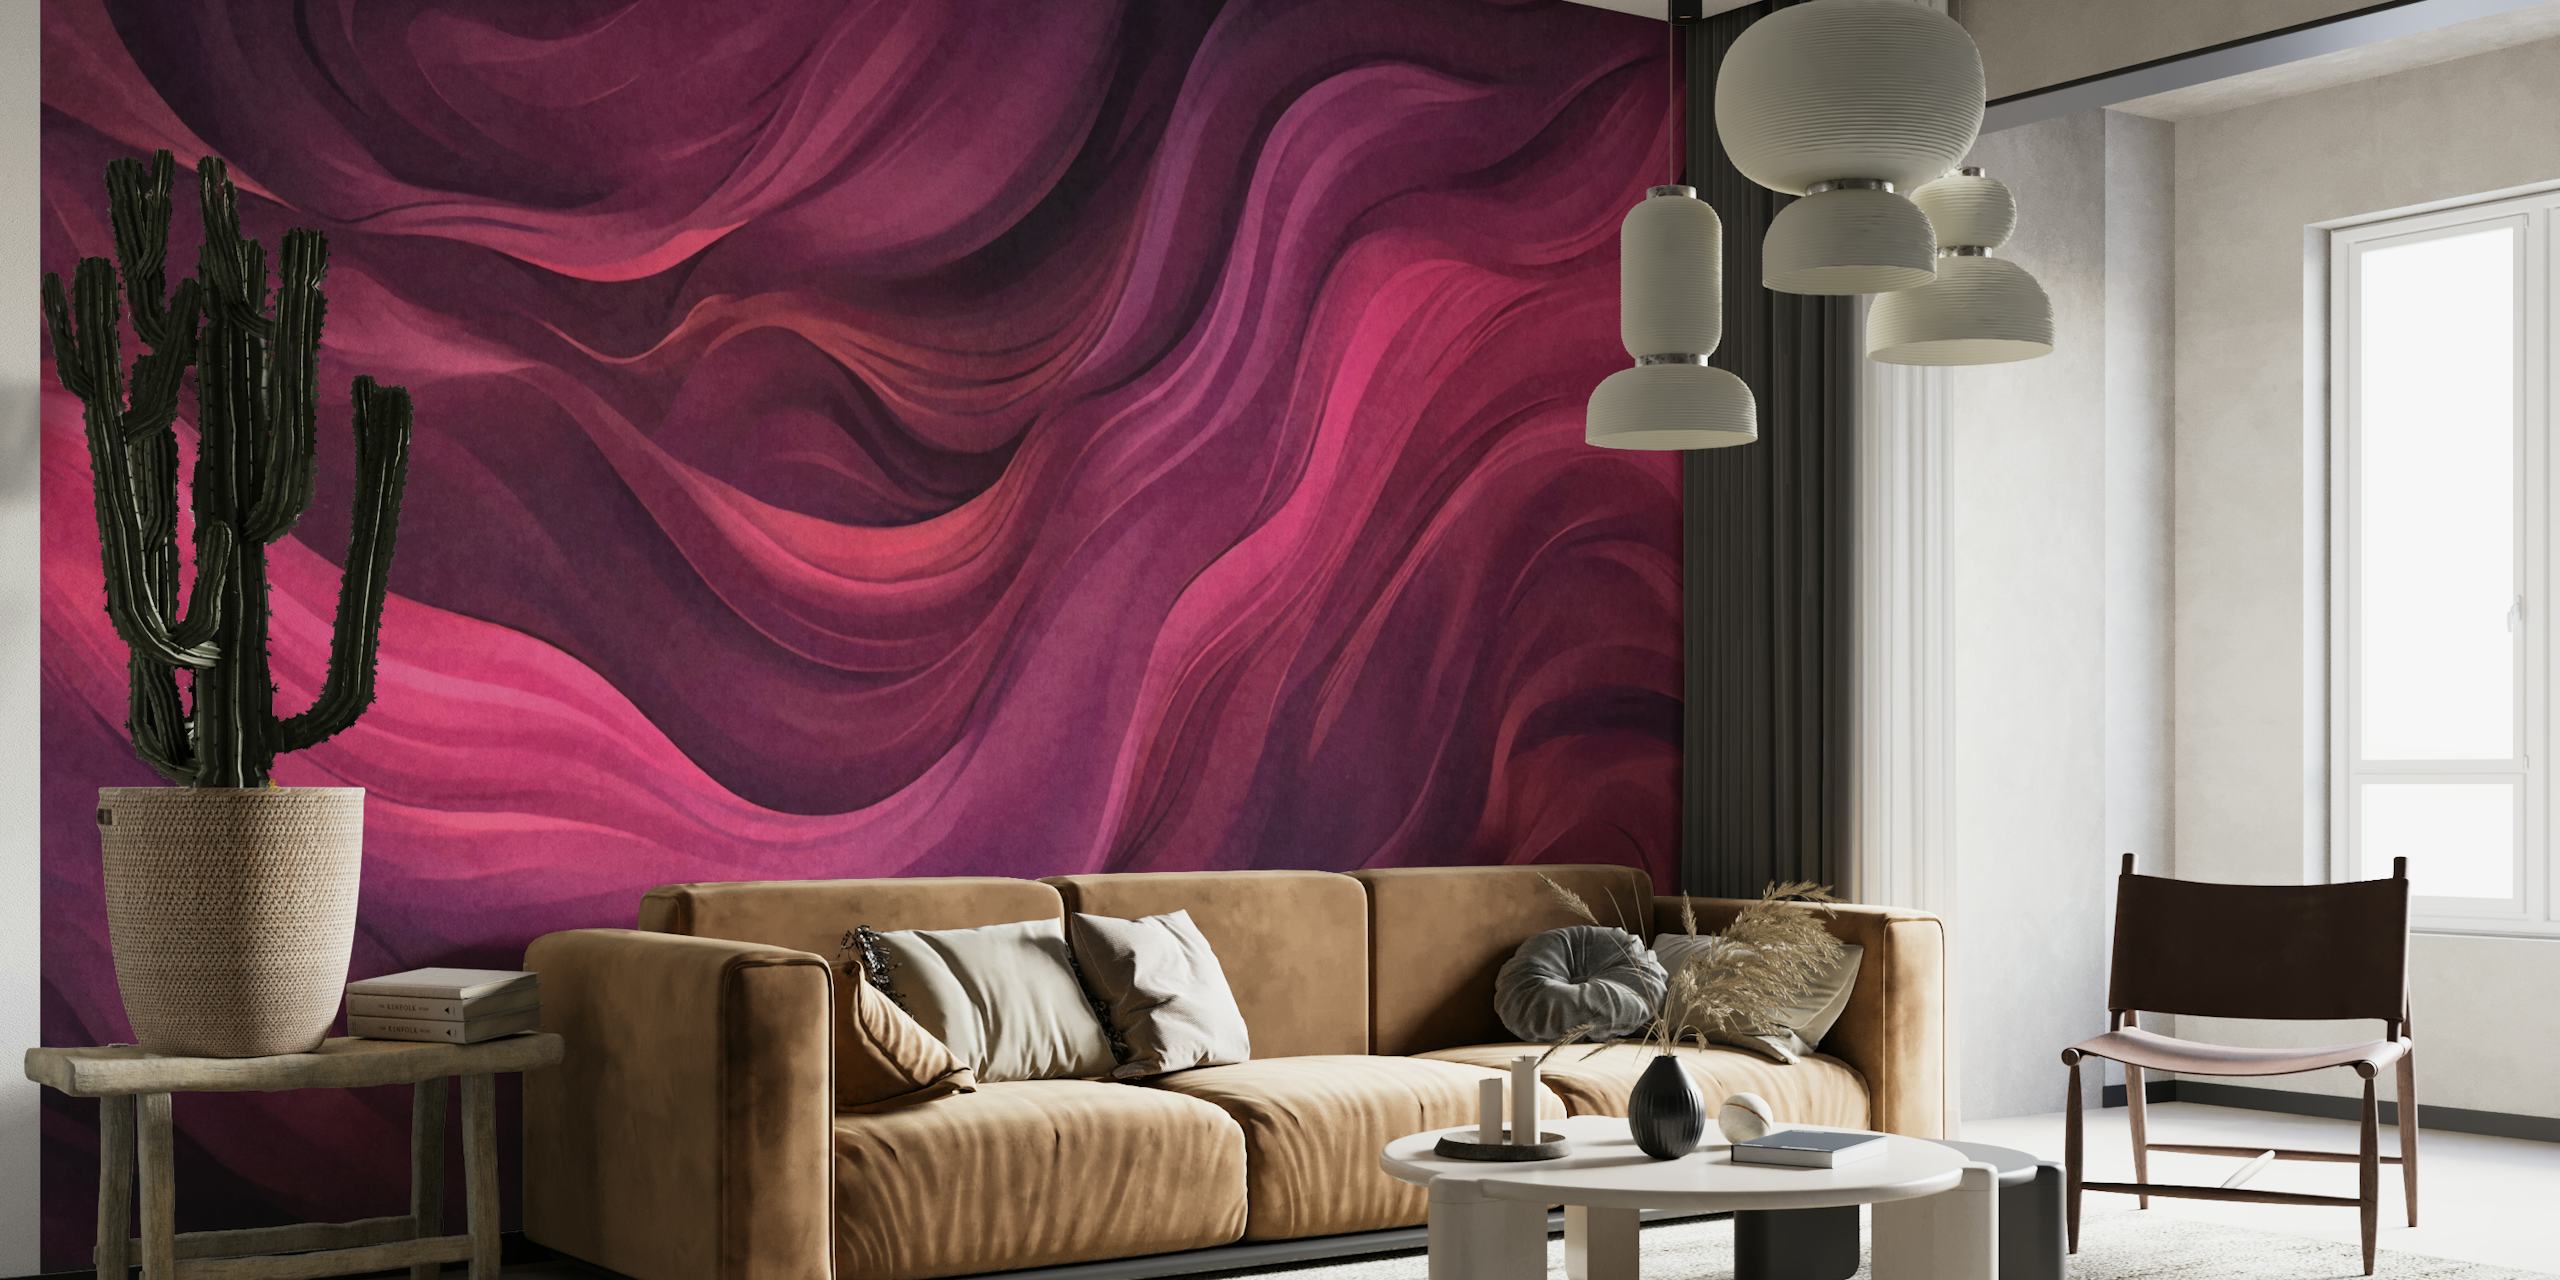 Velvet Flow Deep Magenta Red Abstract Watercolor Art wallpaper